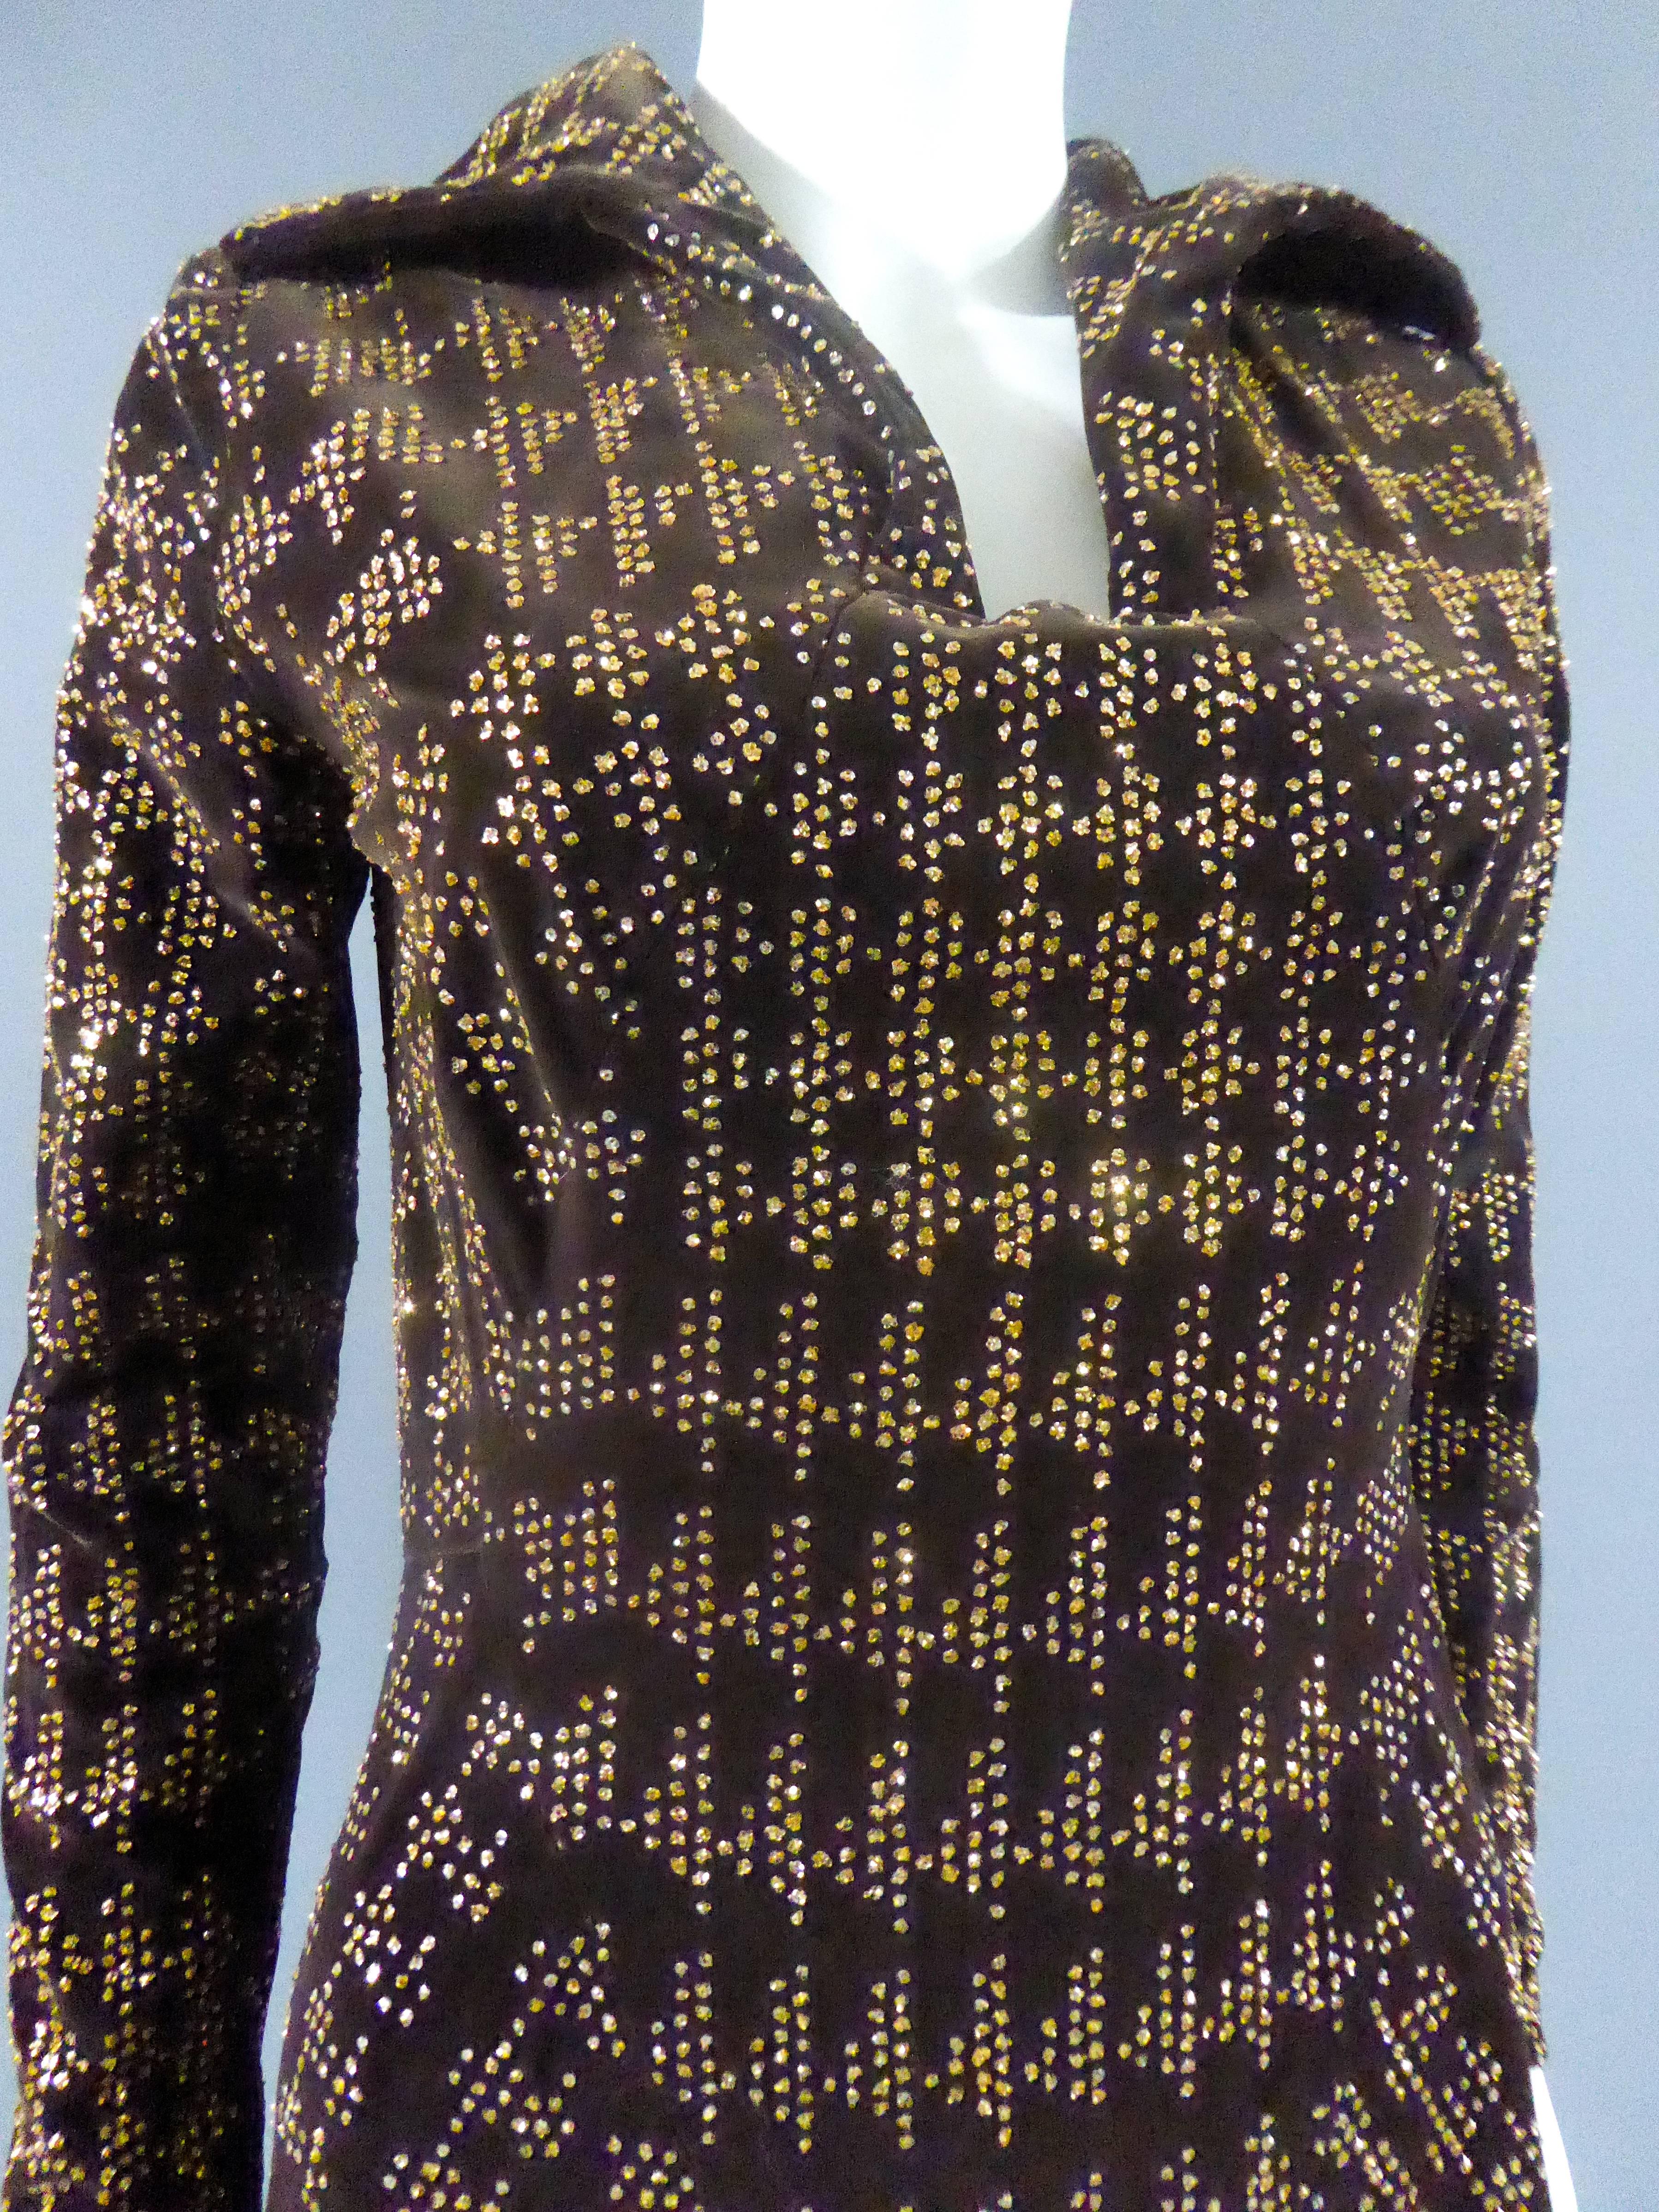 Um 1975

Frankreich

Langes Kleid mit weitem Rock aus braunem Samt mit goldenem Glitter, der in geometrischen Mustern und Hahnentrittmuster aufgeklebt ist. Offener Hemdkragen auf schmaler und rechteckiger Brust. Reißverschluss im Rücken und Kragen